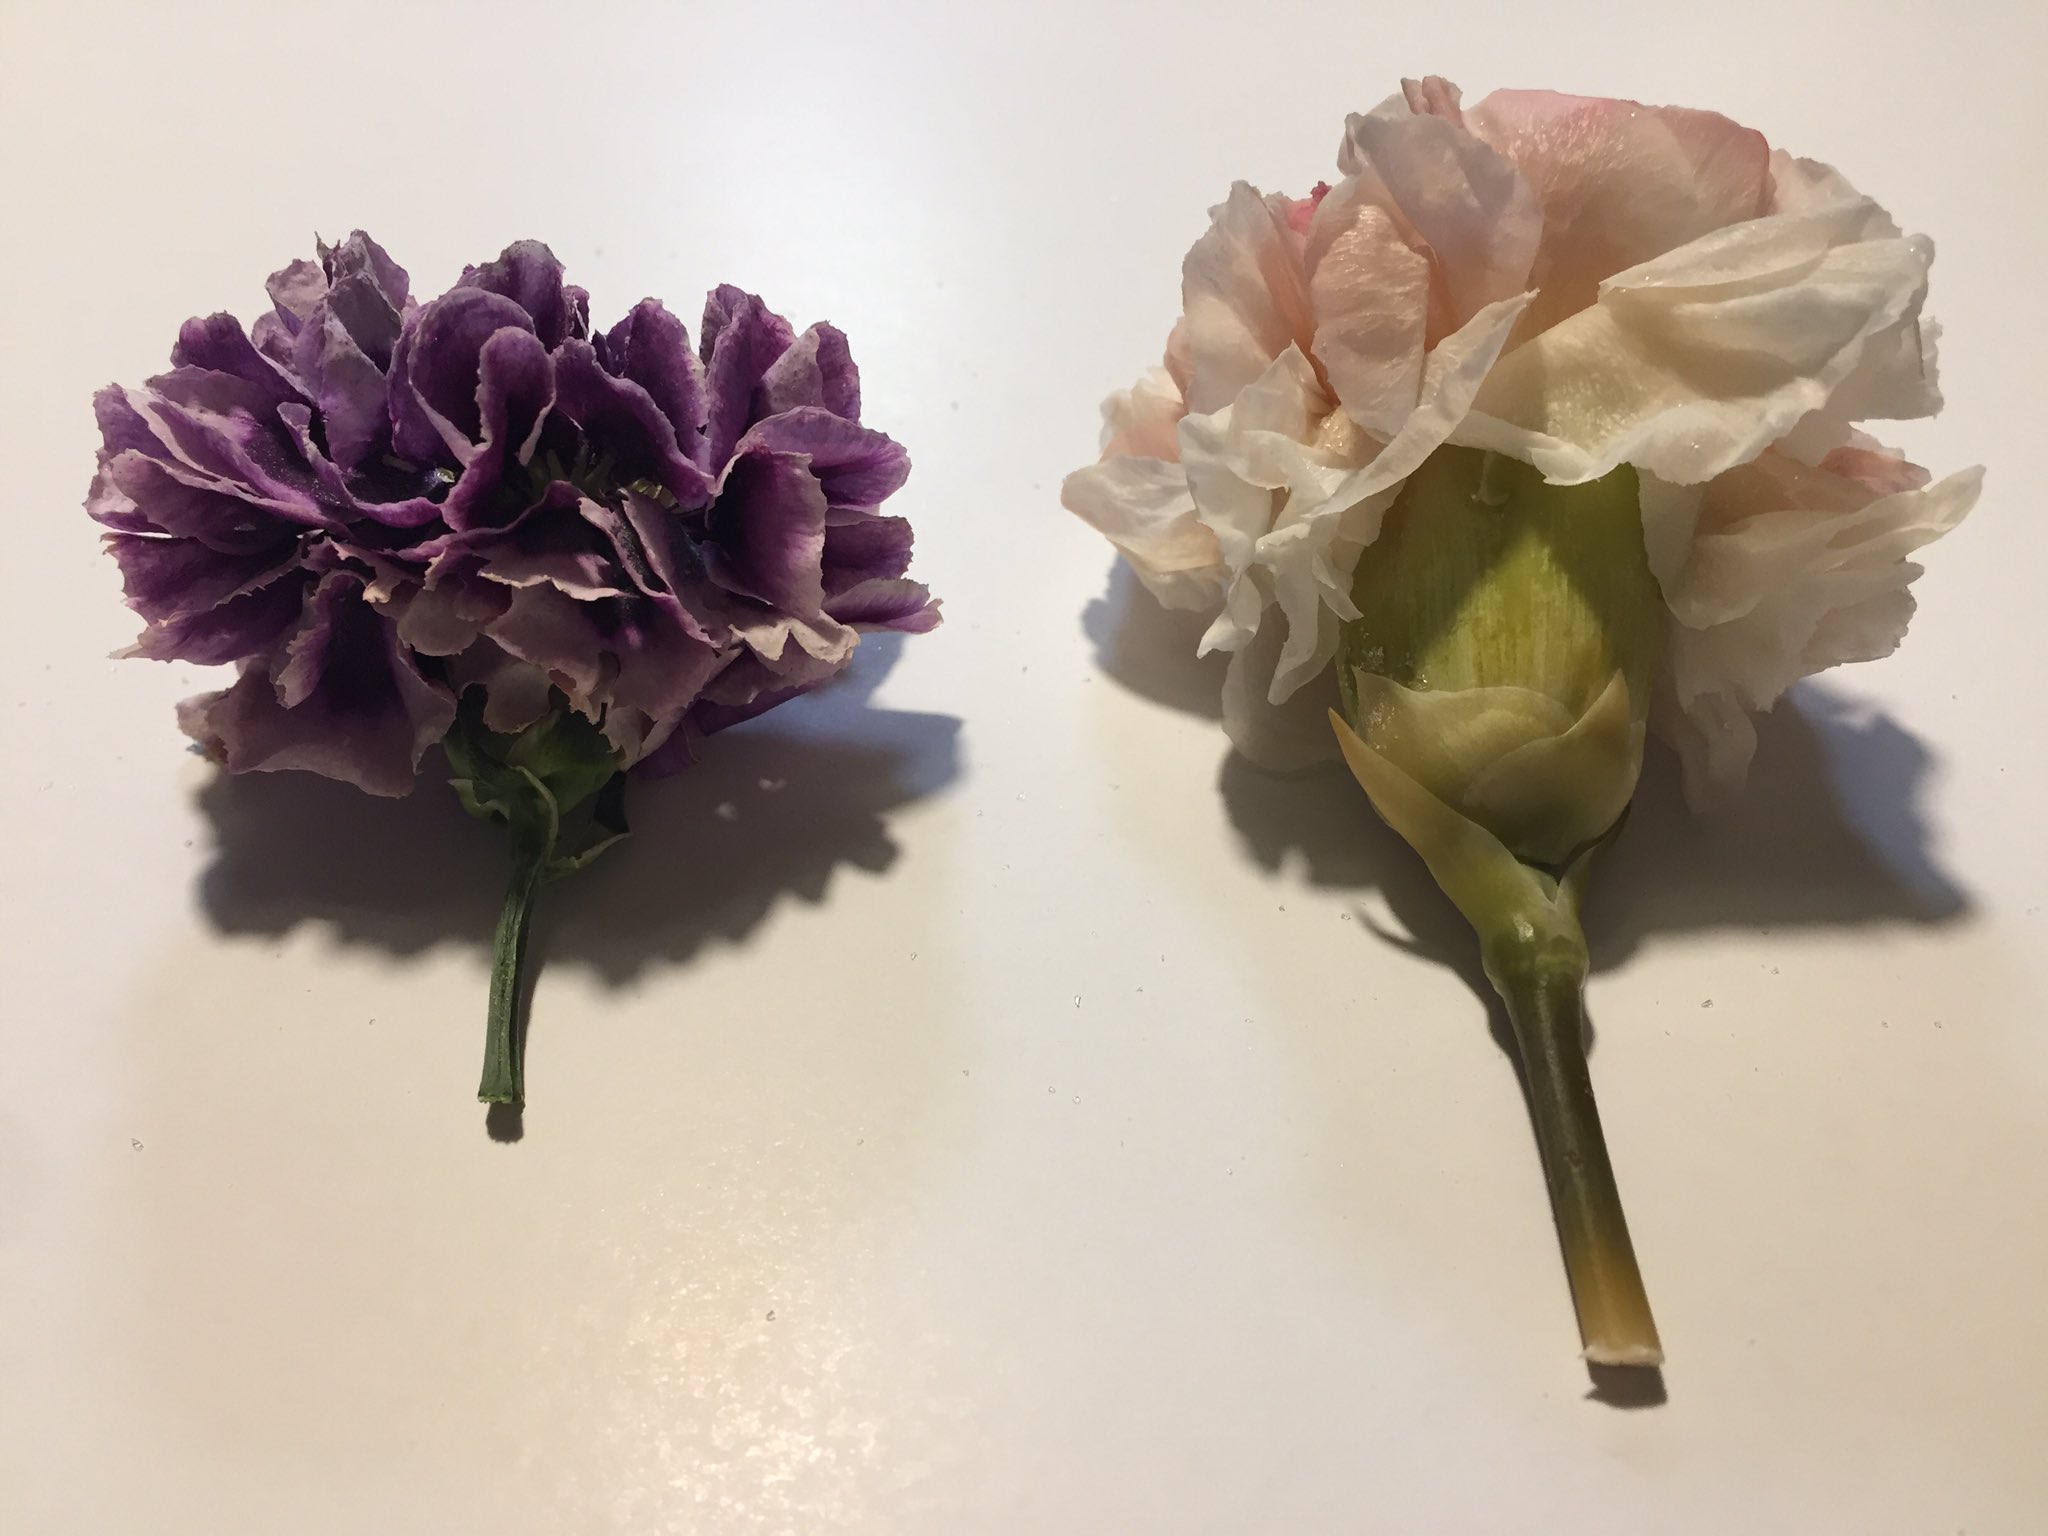 れんか໒ ネットで作り方を調べて事前に実験してみたのがこちら 左のドライフラワーはシリカゲル使用 右のプリザーブドフラワーはエタノールとグリセリンとプリンタインク 着色用 使用 比較するなら同じ種類の花を使うべきだった T Co